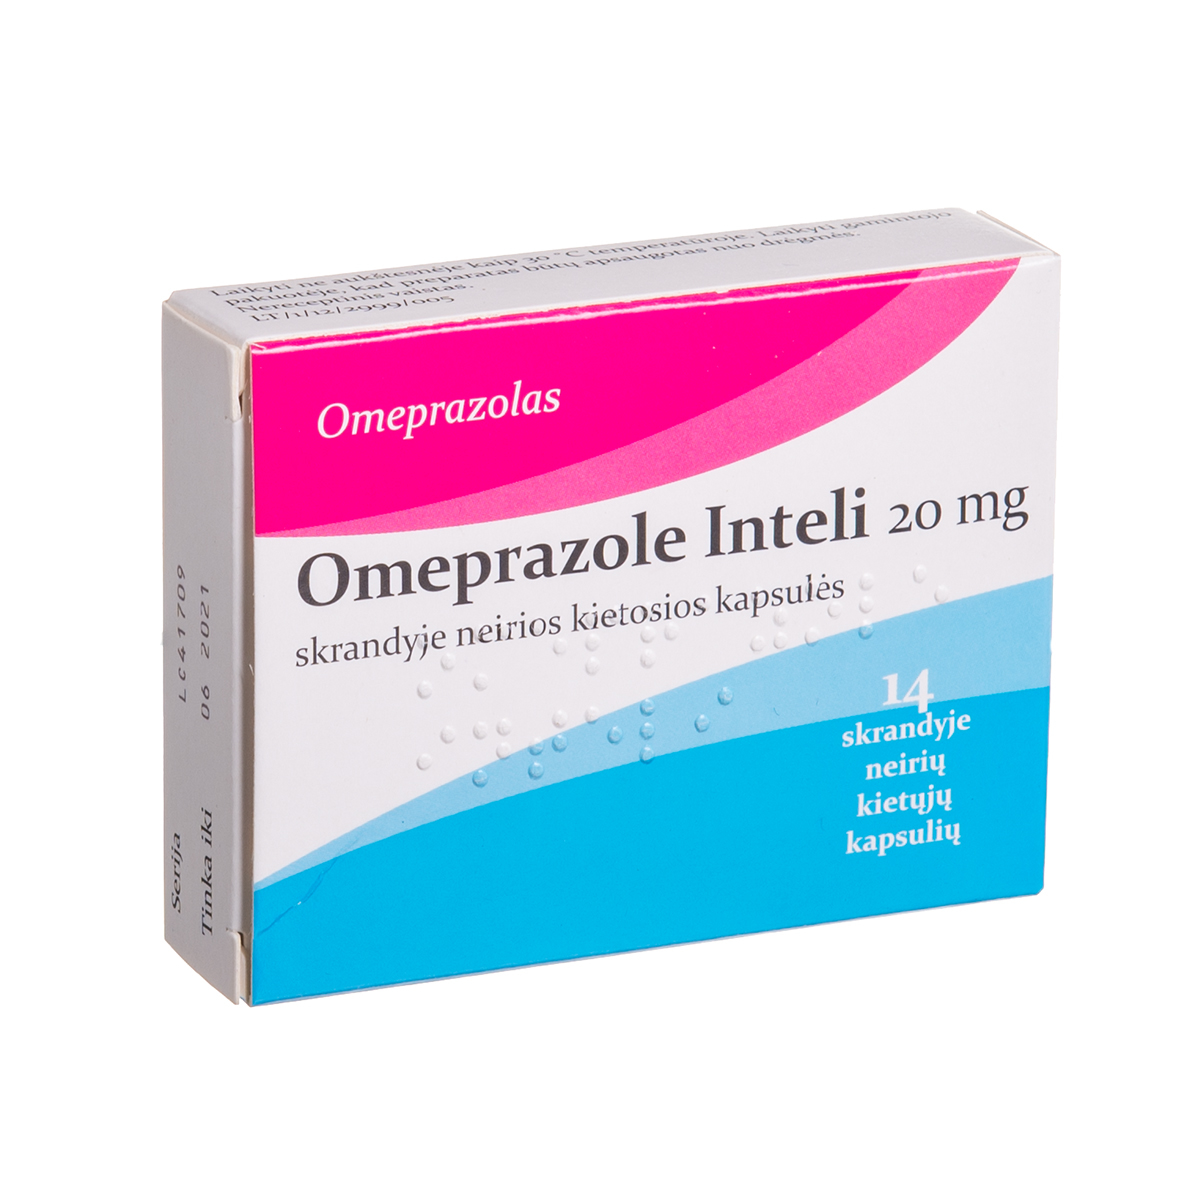 OMEPRAZOLE INTELI, 20 mg, skrandyje neirios kietosios kapsulės, N14